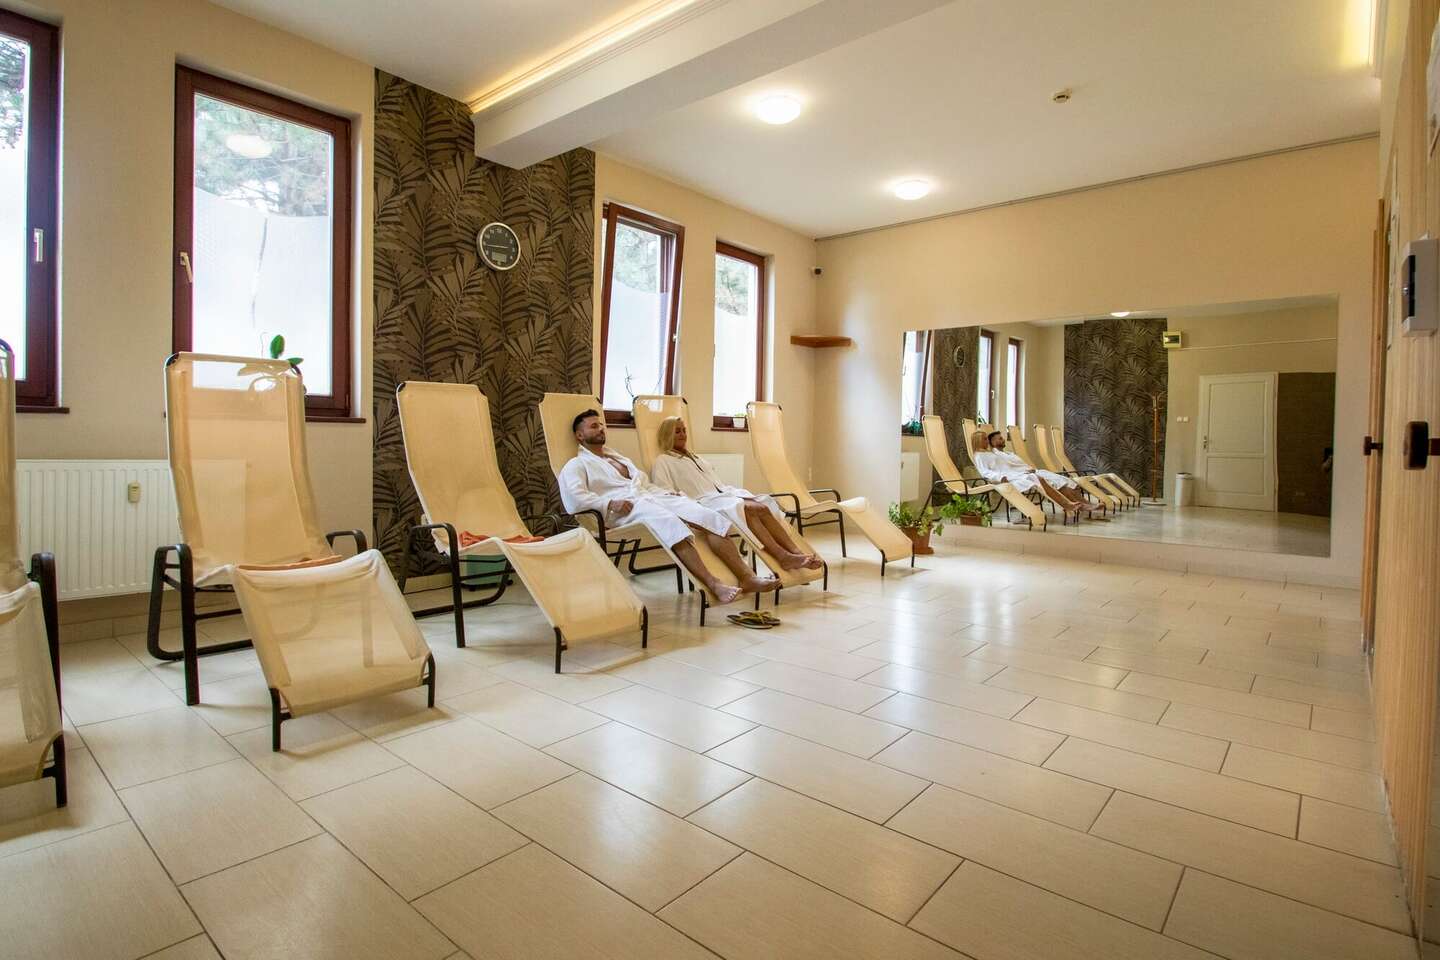 Kúpeľný a romantický wellness pobyt s raňajkami alebo polpenziou aj pre dôchodcov